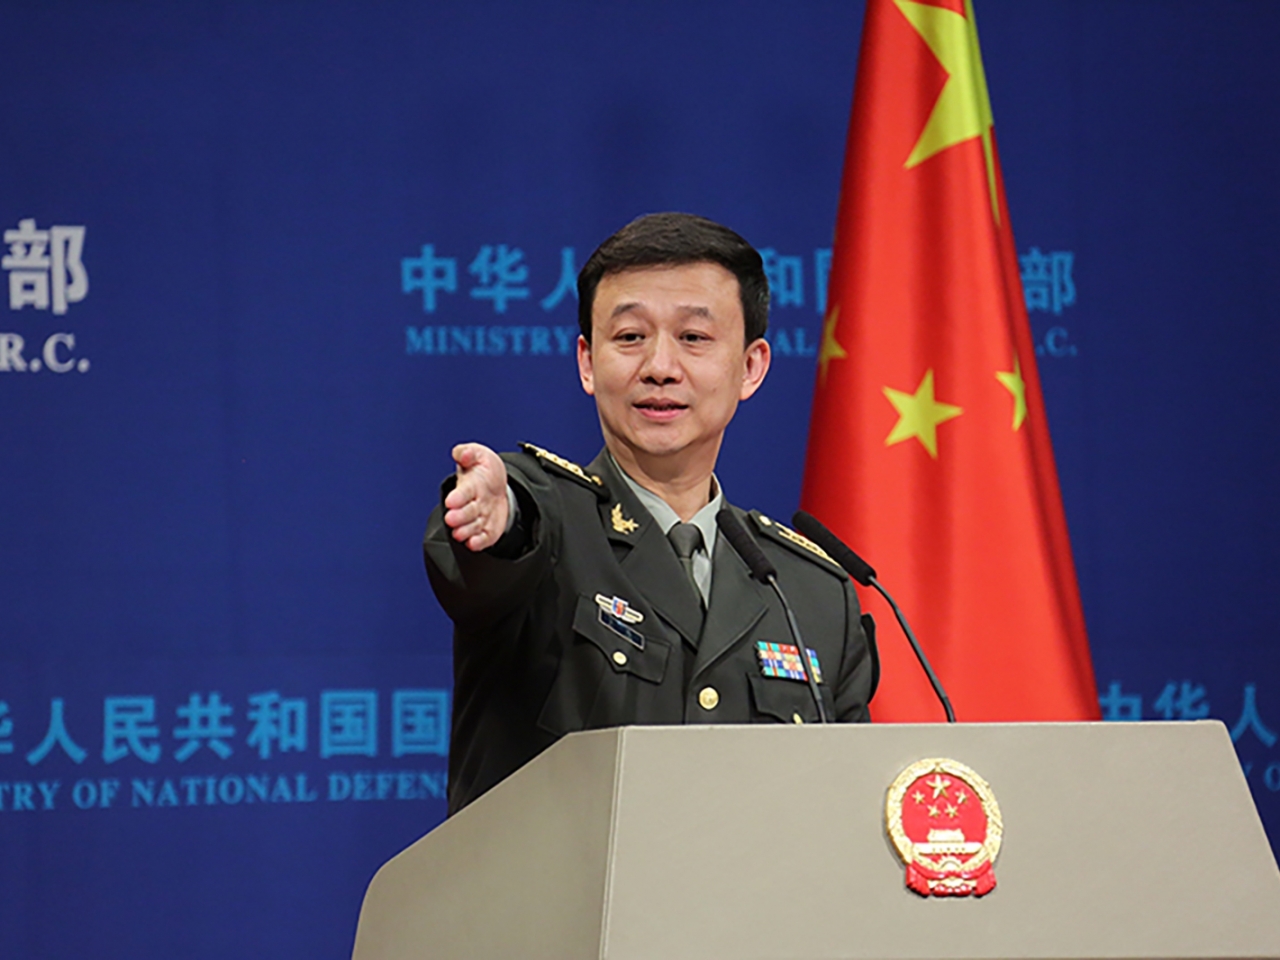 批美捏造“中国军事威胁” 中国提出严正交涉